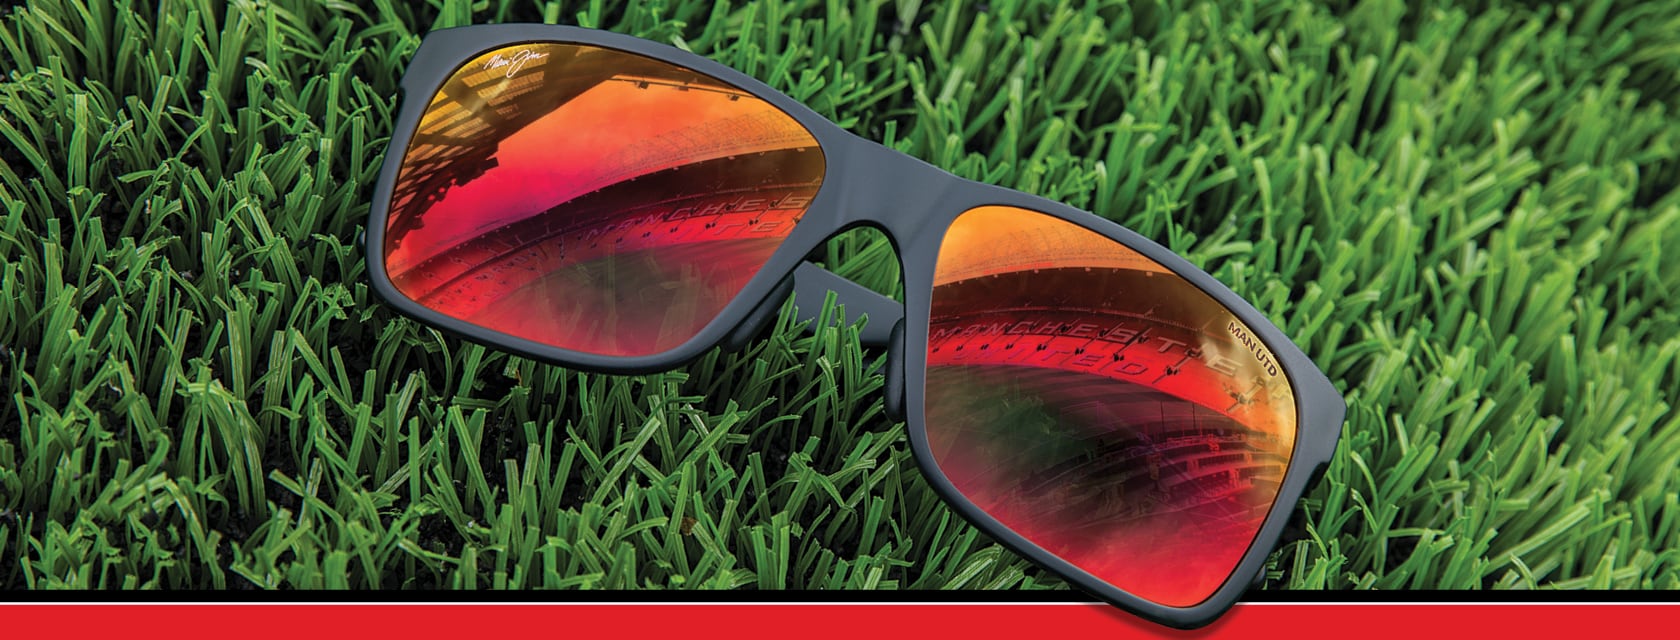 Red Sands-Sonnenbrille auf Gras, Manchester United-Stadion, reflektiert von Hawaii Lava ™ -Objektiv